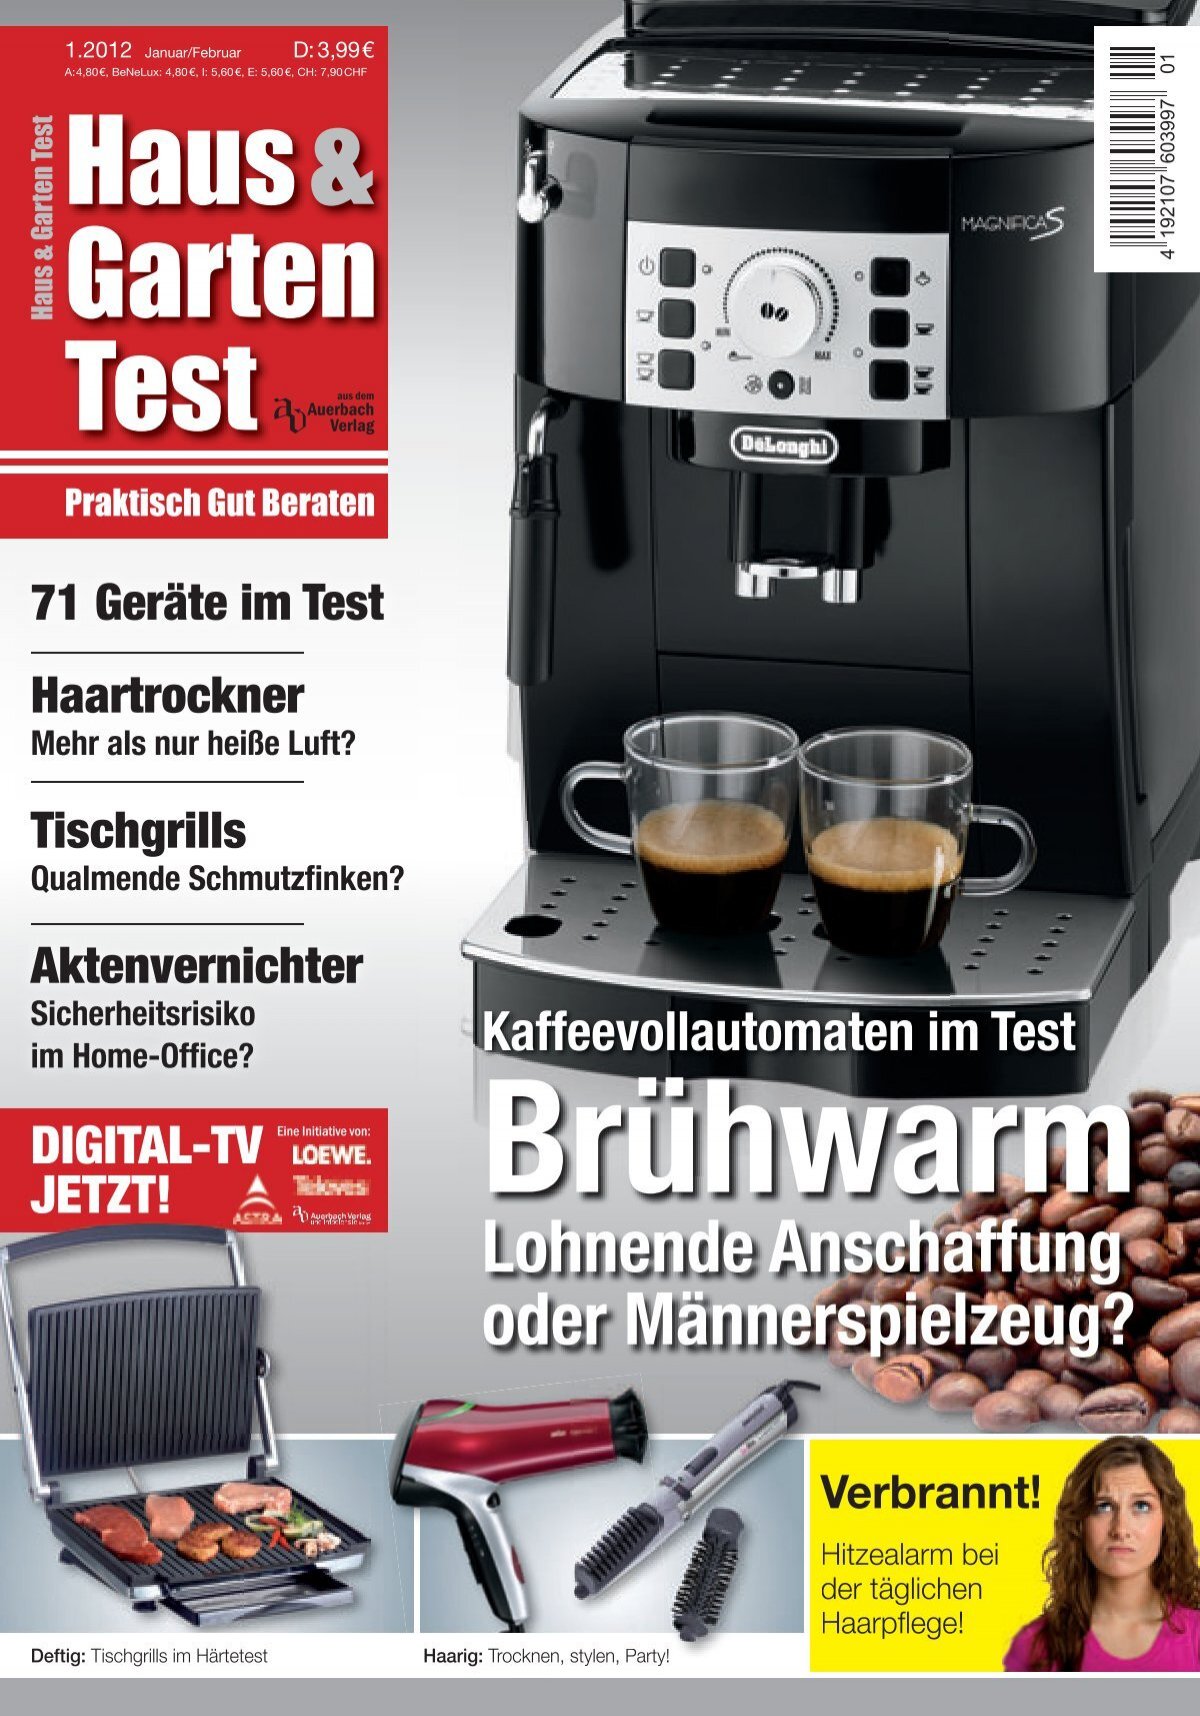 Haus & Garten Test Kaffeevollautomaten im Test (Vorschau)